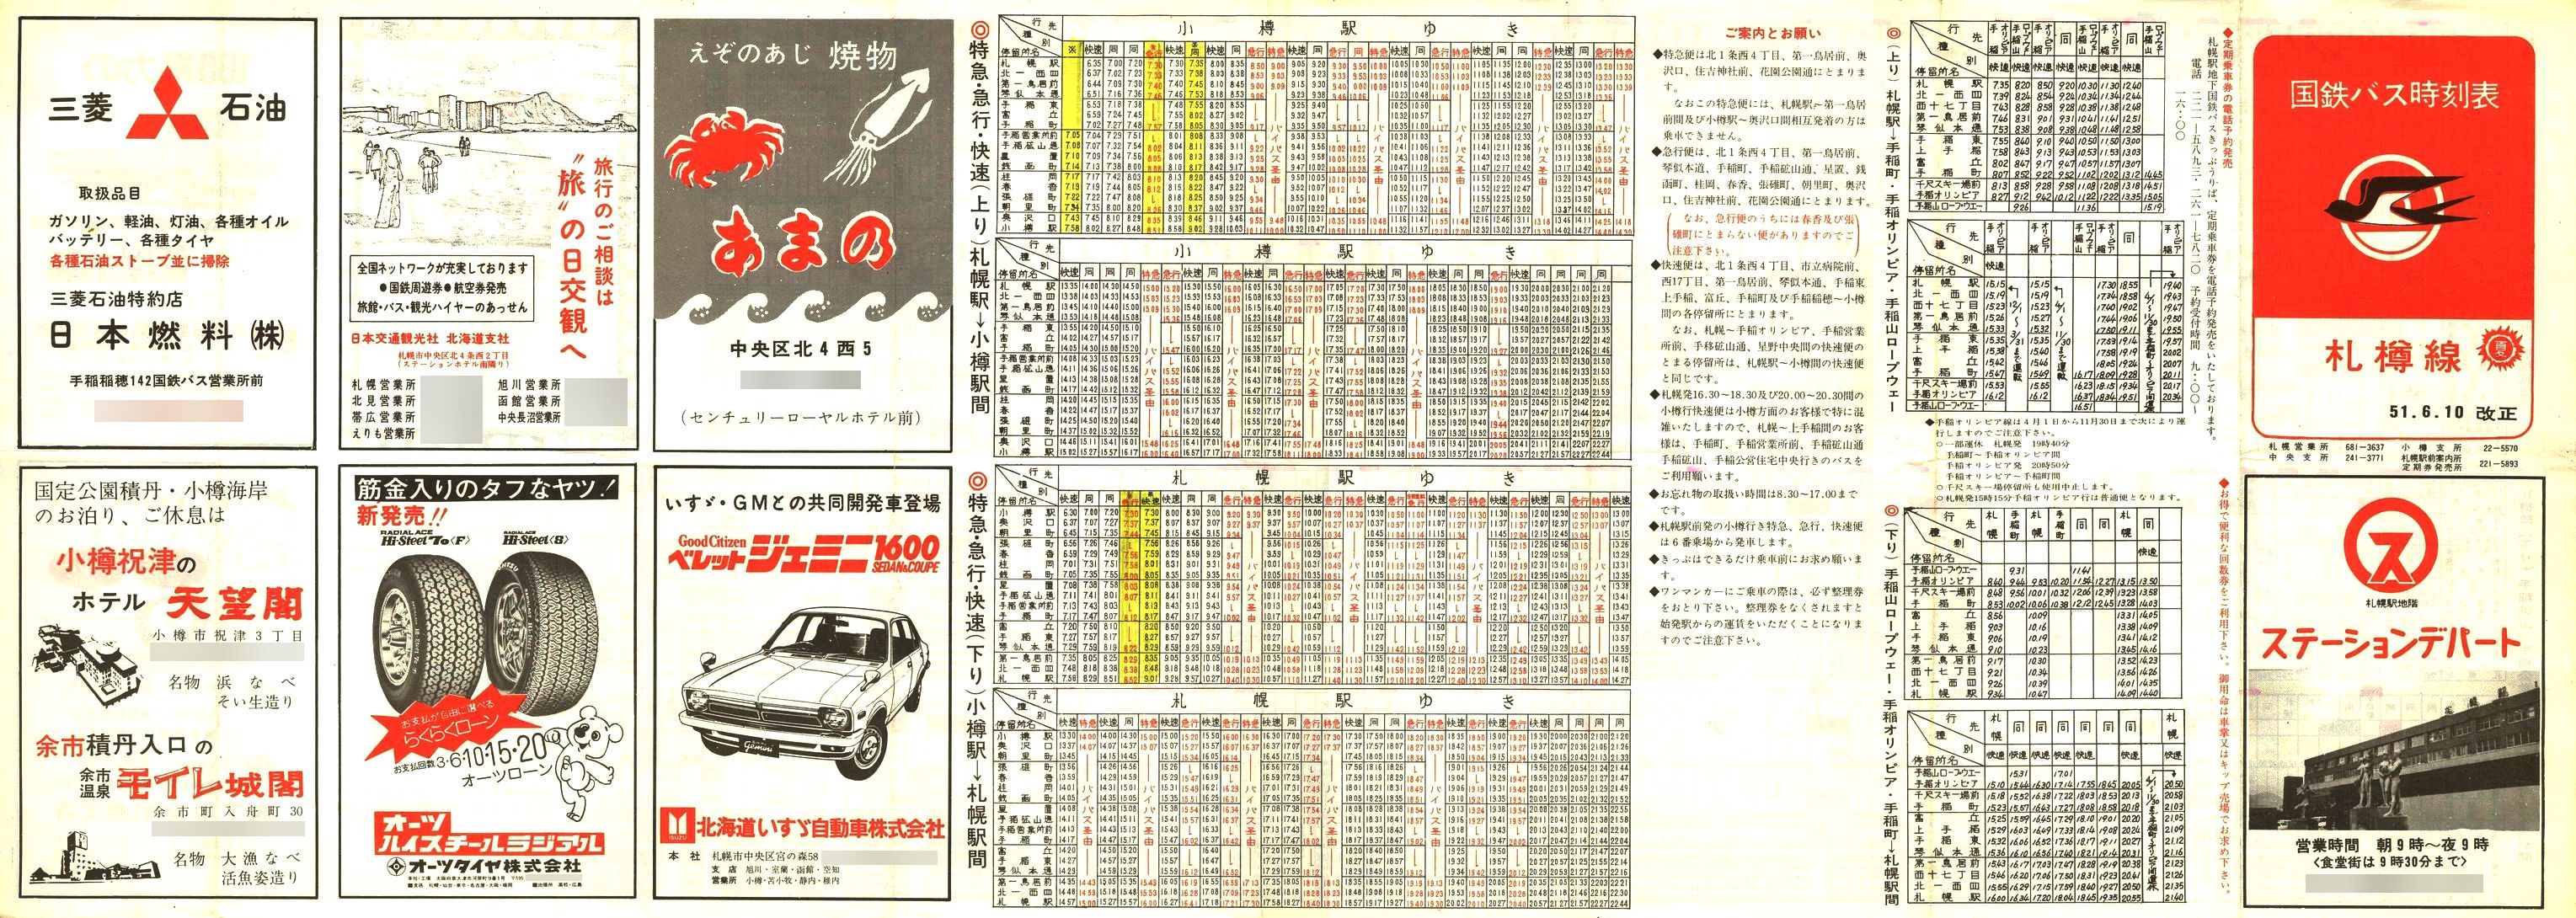 1976-06-10改正_国鉄バス_札樽線時刻表表面